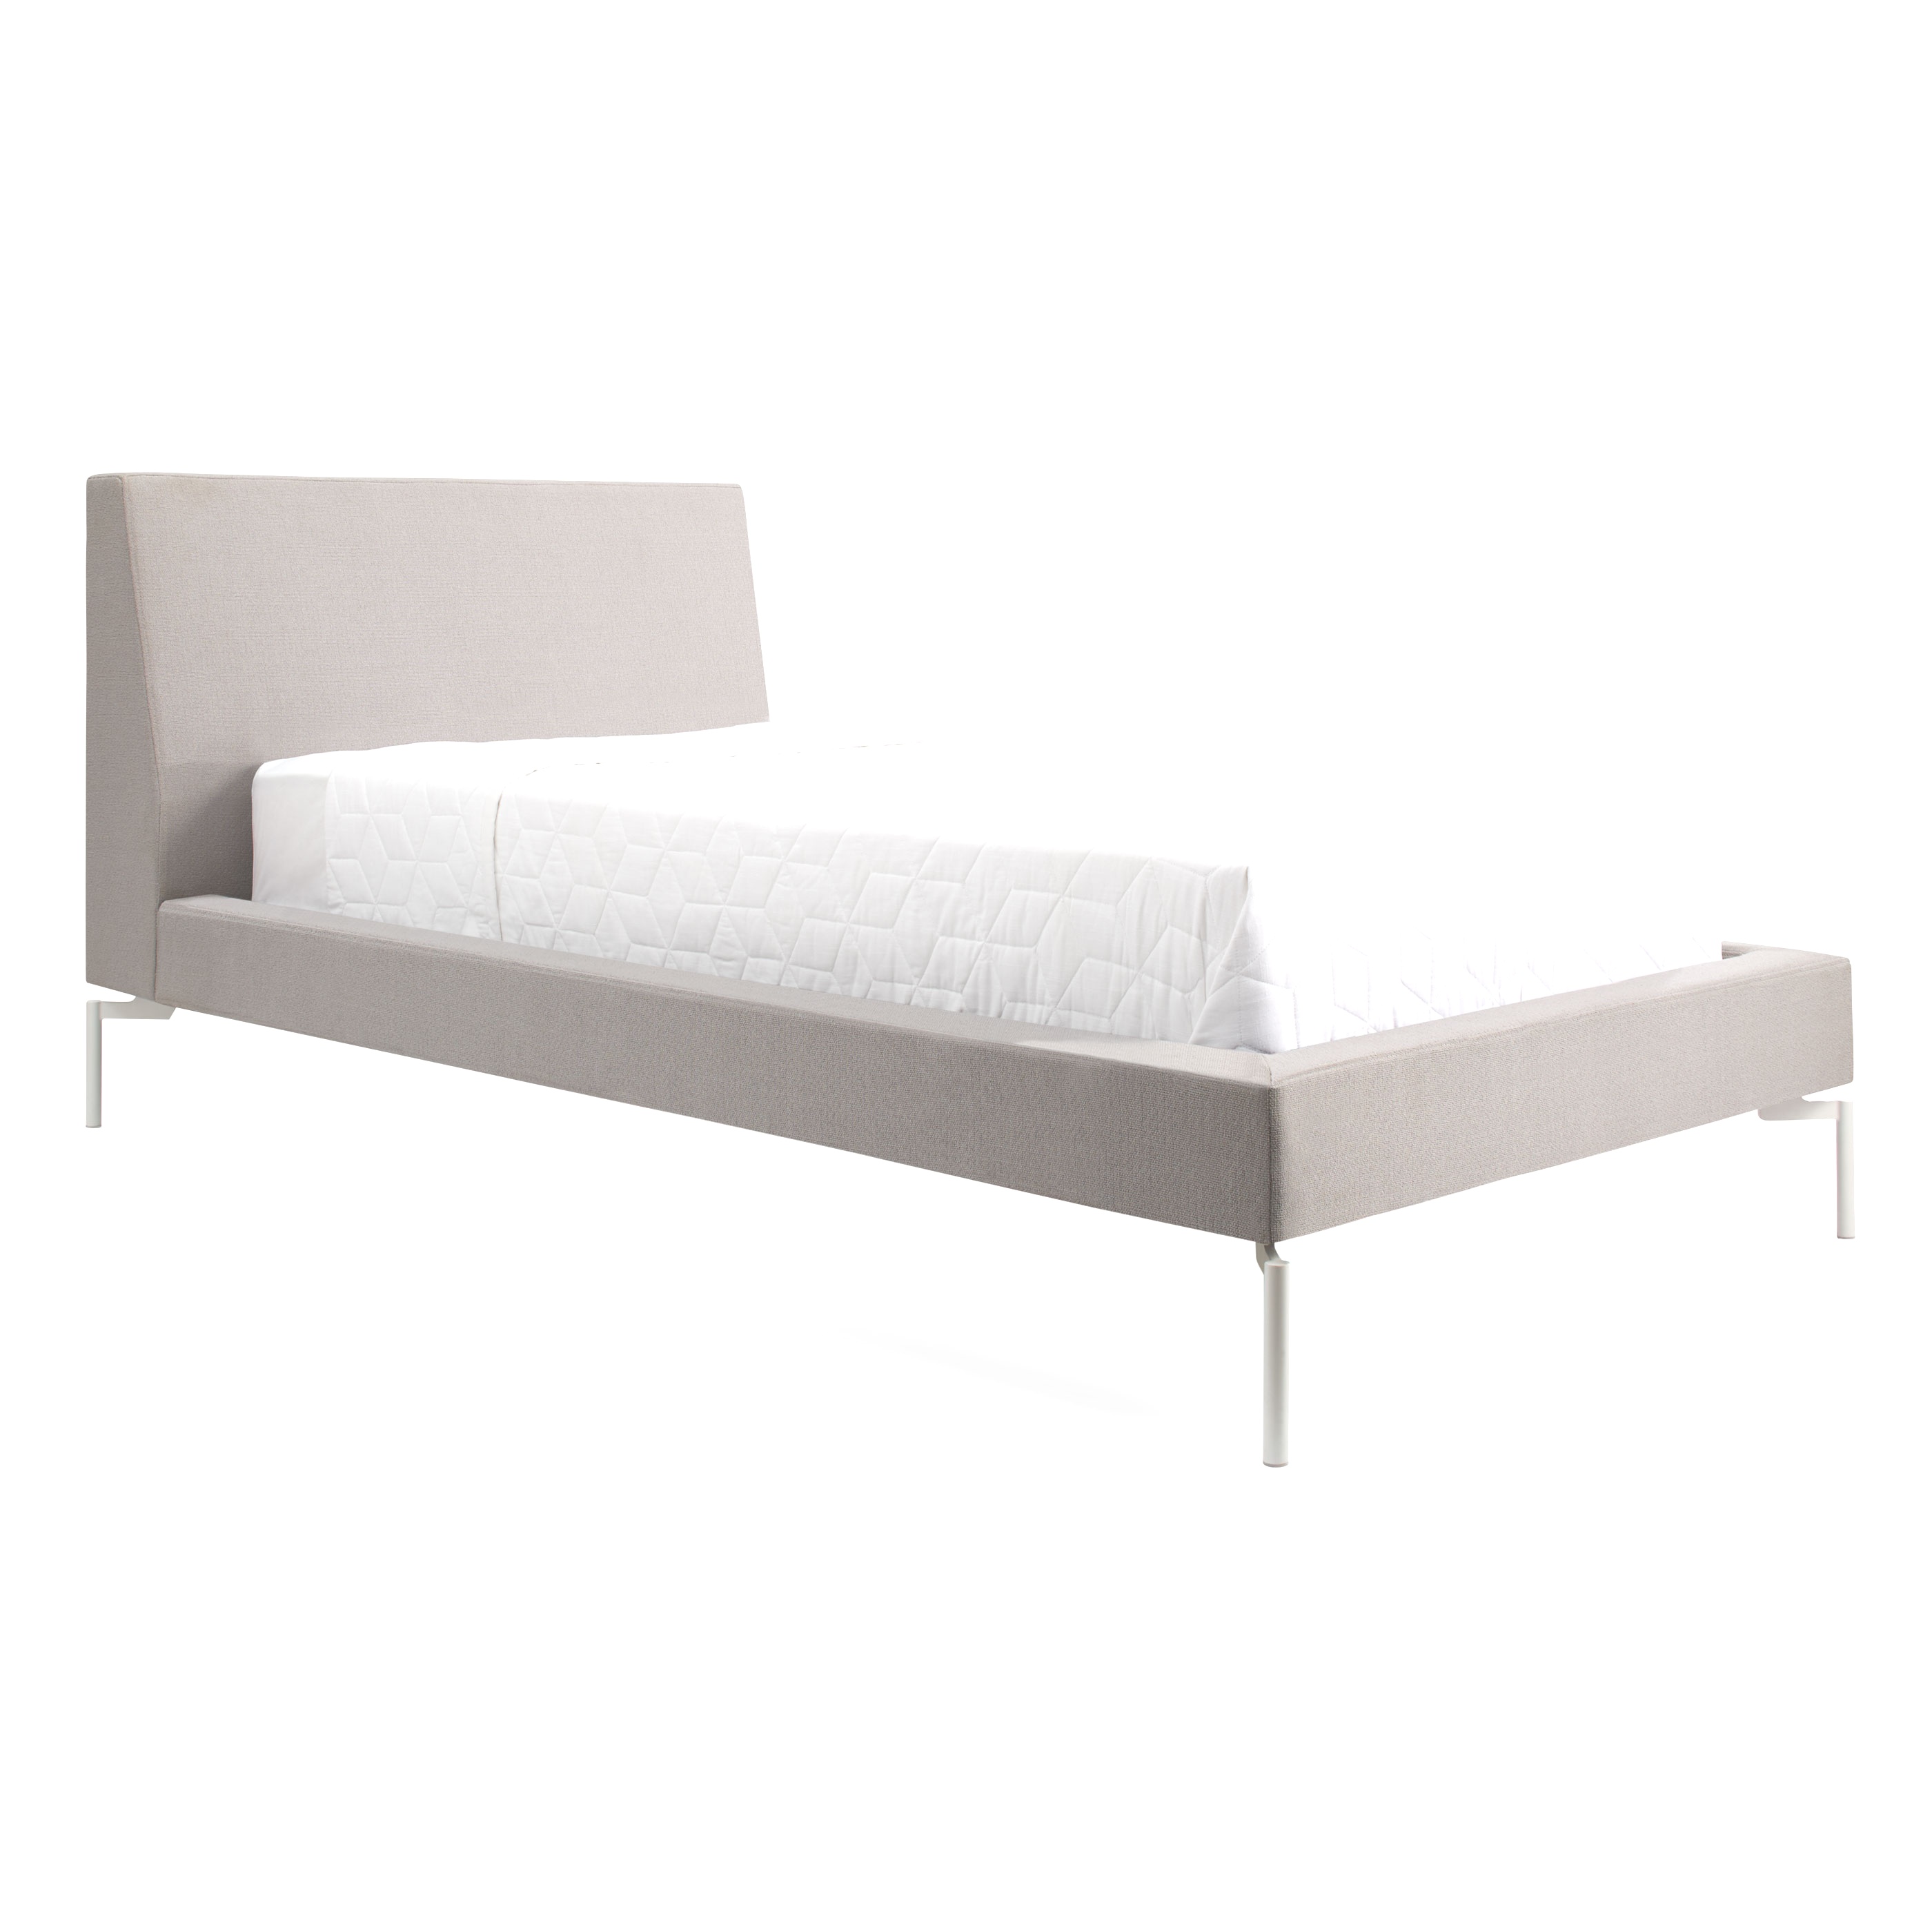 Twin Bed Frames For Sale | Bed Frames Wallpaper : Hi-Res Wood Platform Bed Twin Beds For Sale ..